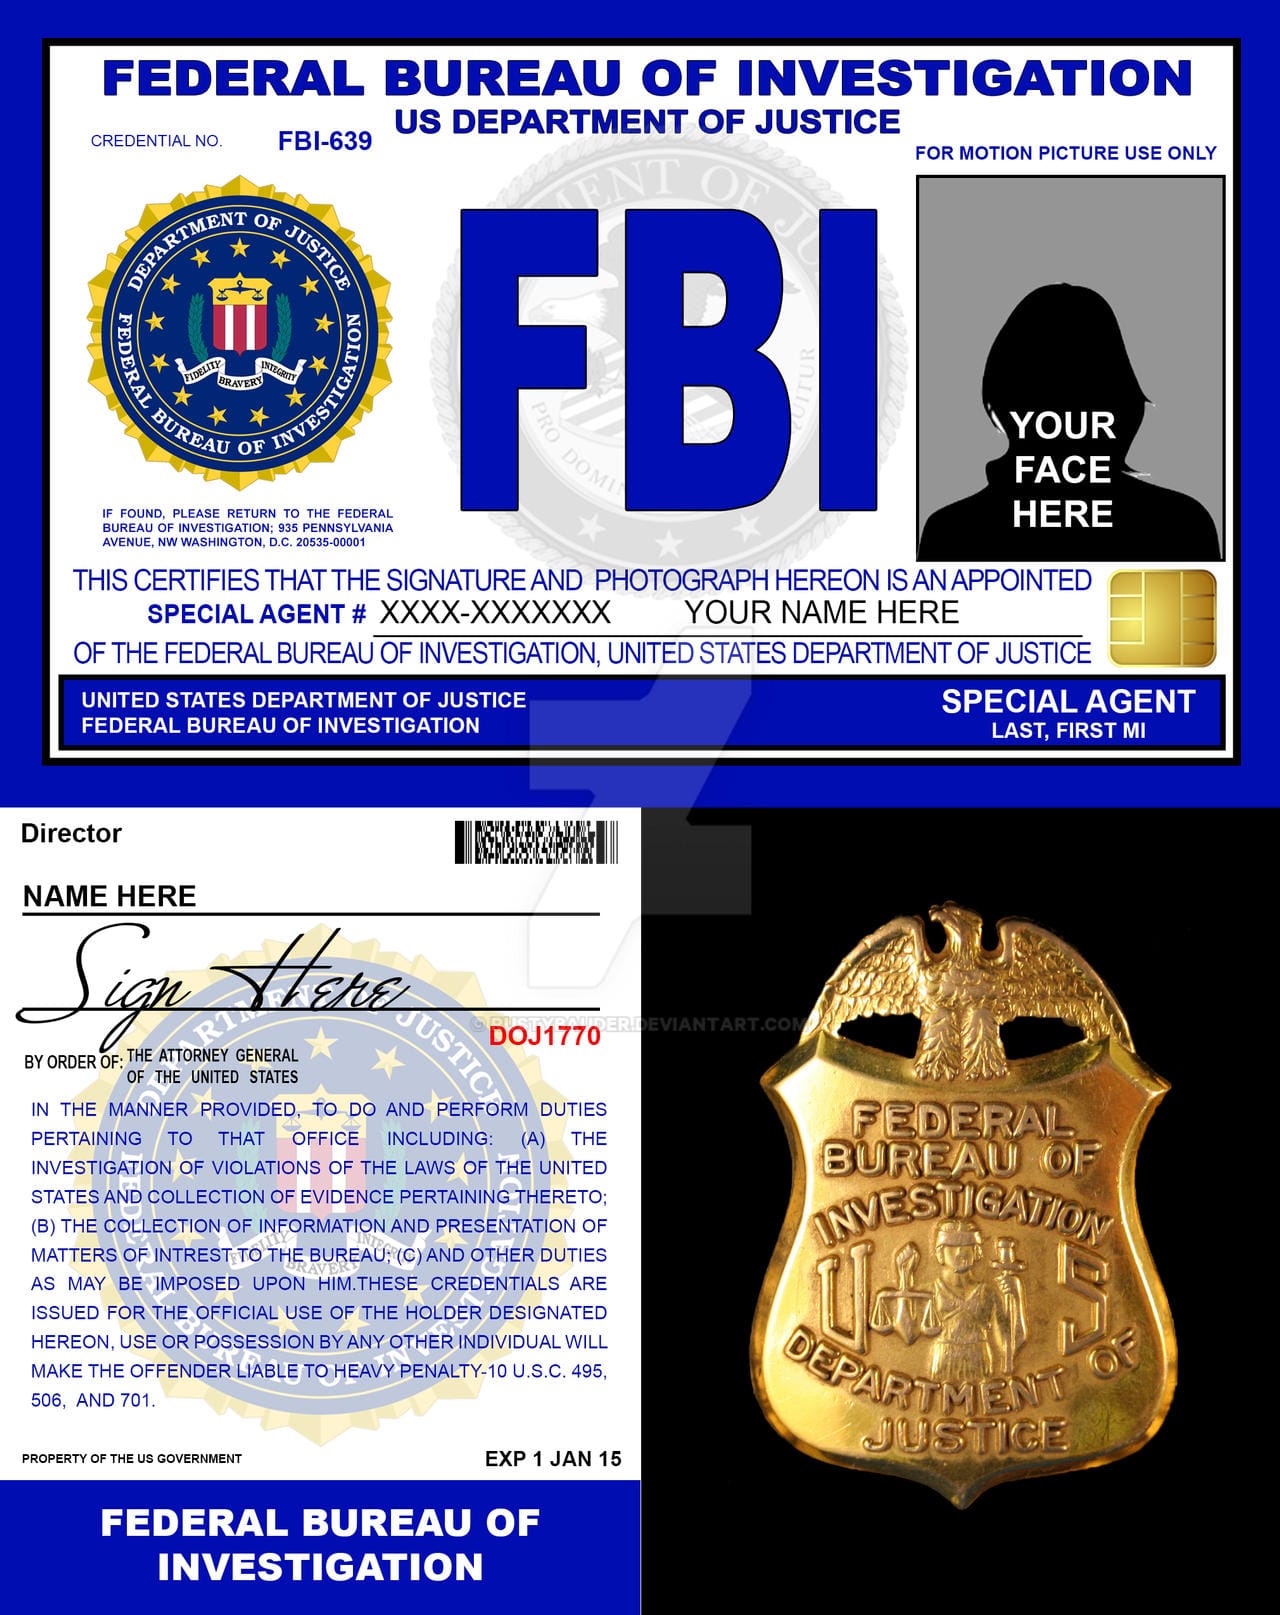 ФБР арестовало мужчину из Манхэттена, Идина Далпура, по обвинению в организации мошеннической схемы на сумму $43 млн. связанной с вымышленным бизнесом в сфере гостеприимства в Лас-Вегасе и по торговле криптовалютой